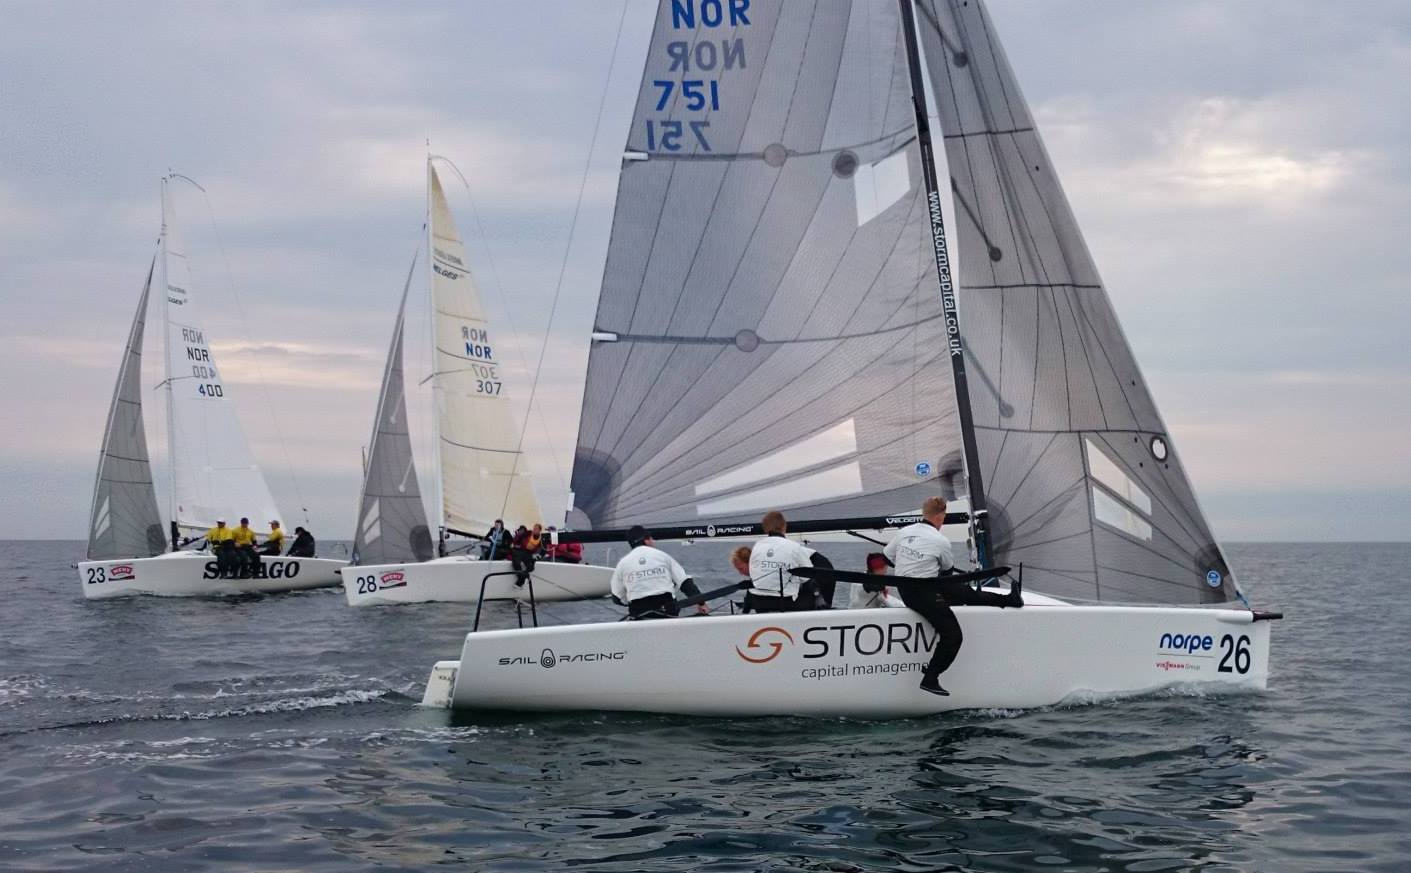 NOR 751 Storm Capital Sail Racing